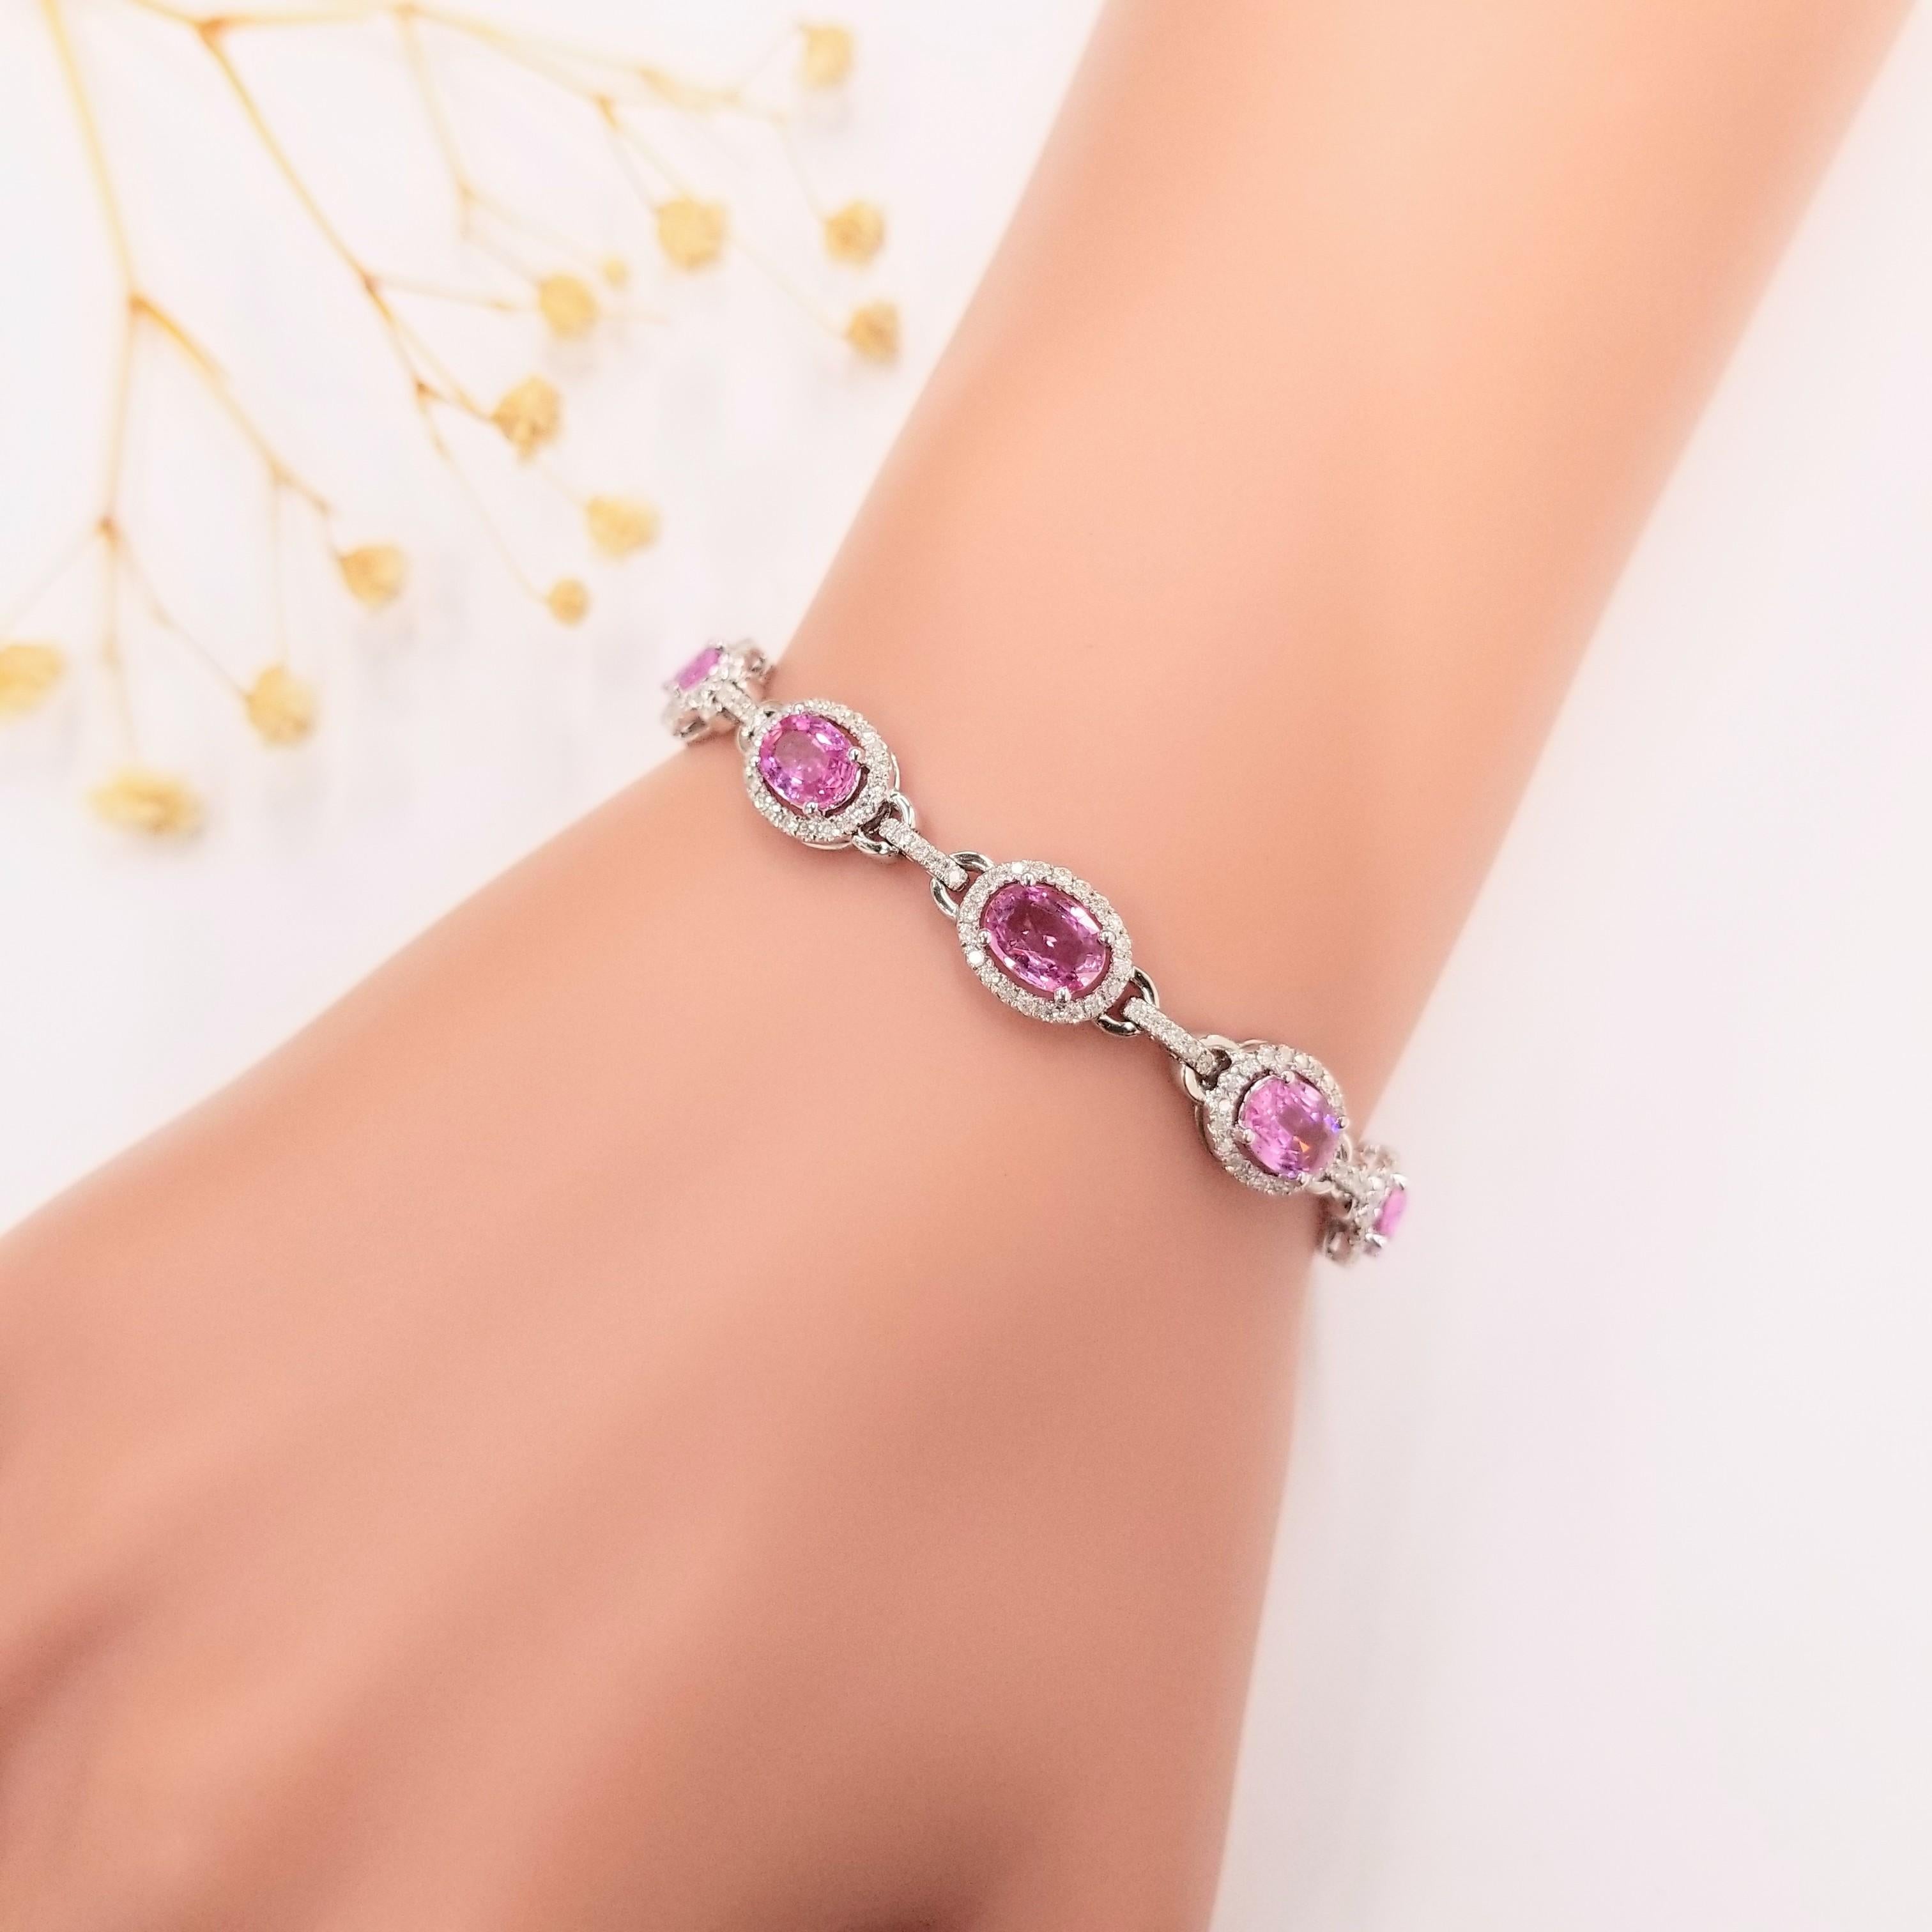 Wir präsentieren das bezaubernde IGI-zertifizierte Armband mit 4,24 Karat rosa Saphiren und Diamanten in 18 Karat Gold. Dieses exquisite Armband ist mit ovalen rosa Saphiren besetzt, die durch ihre intensive purpurrote Farbe bestechen. Jeder